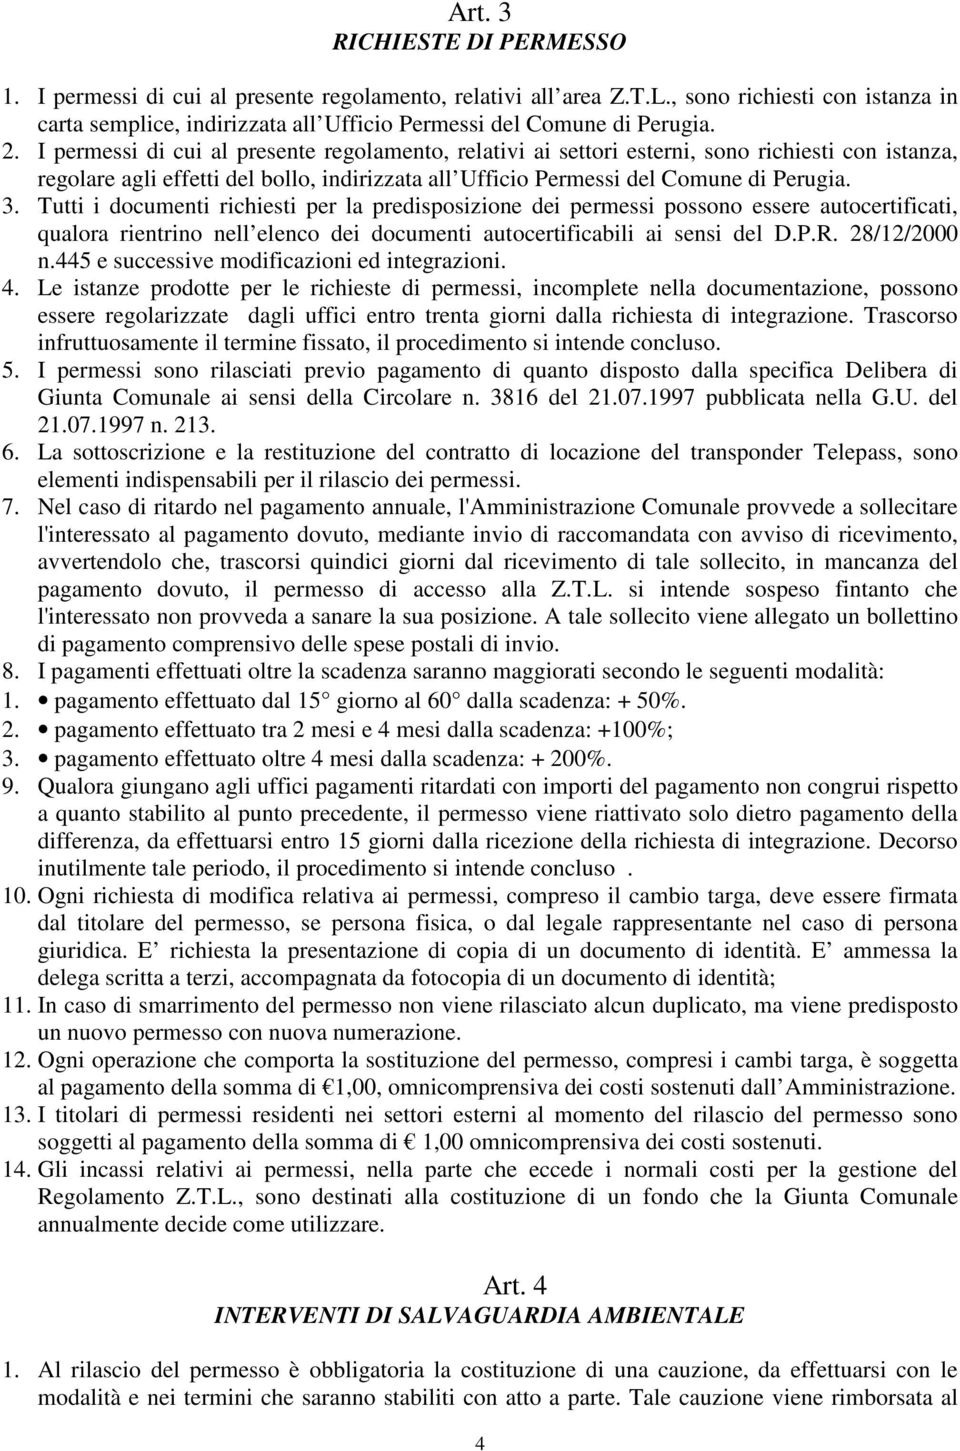 I permessi di cui al presente regolamento, relativi ai settori esterni, sono richiesti con istanza, regolare agli effetti del bollo, indirizzata all Ufficio Permessi del Comune di Perugia. 3.